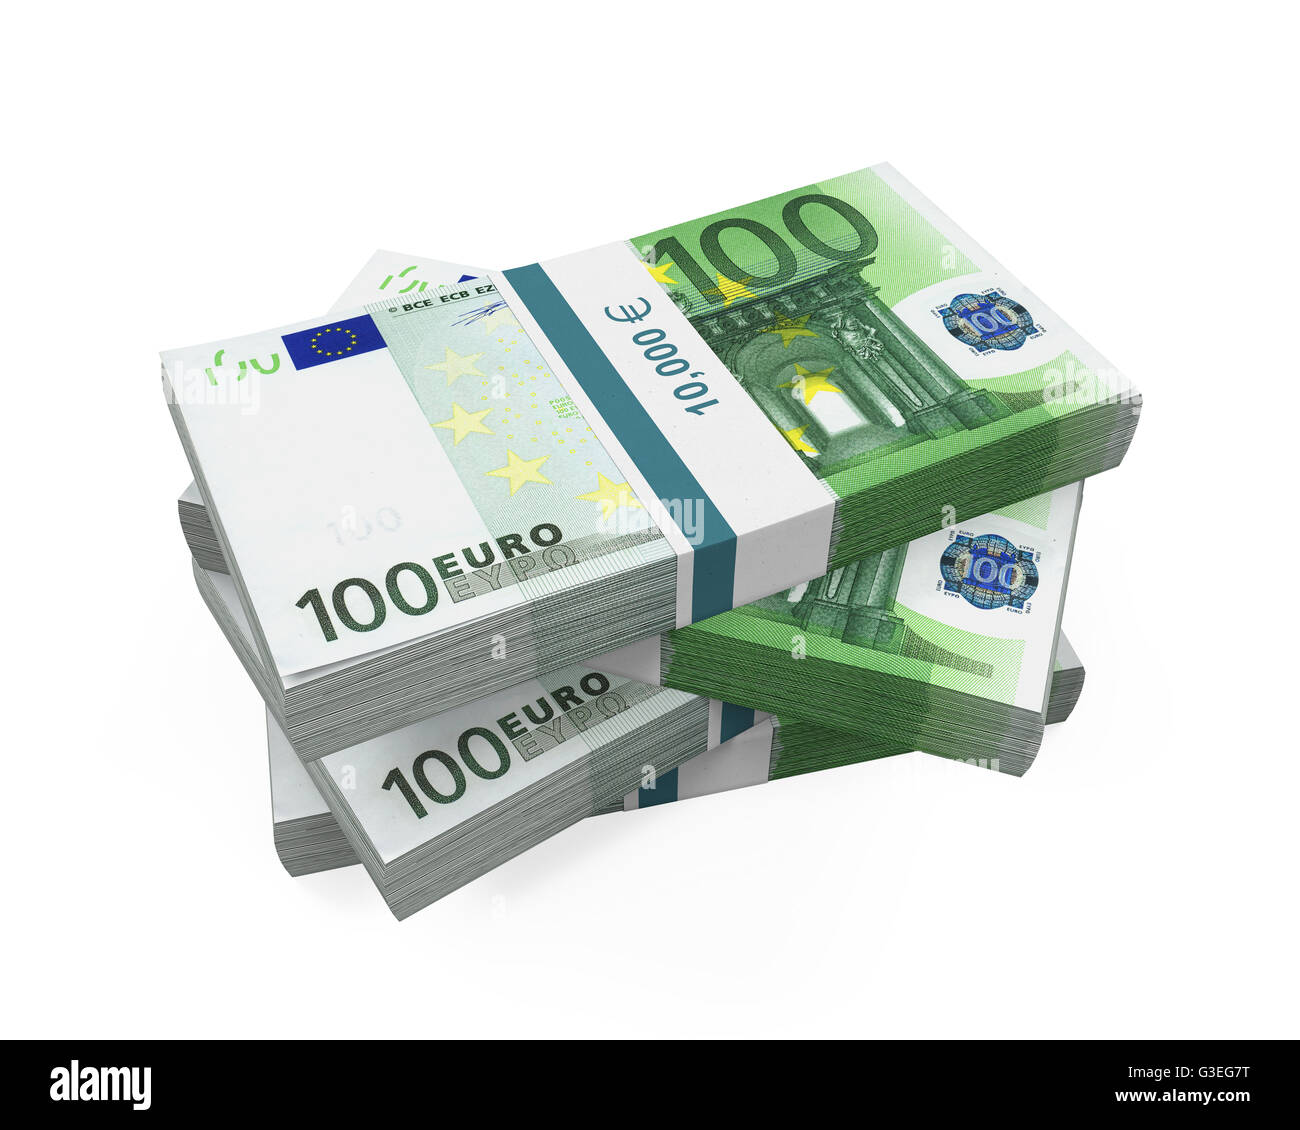 Fajos de billetes de 100 Euros Fotografía de stock - Alamy